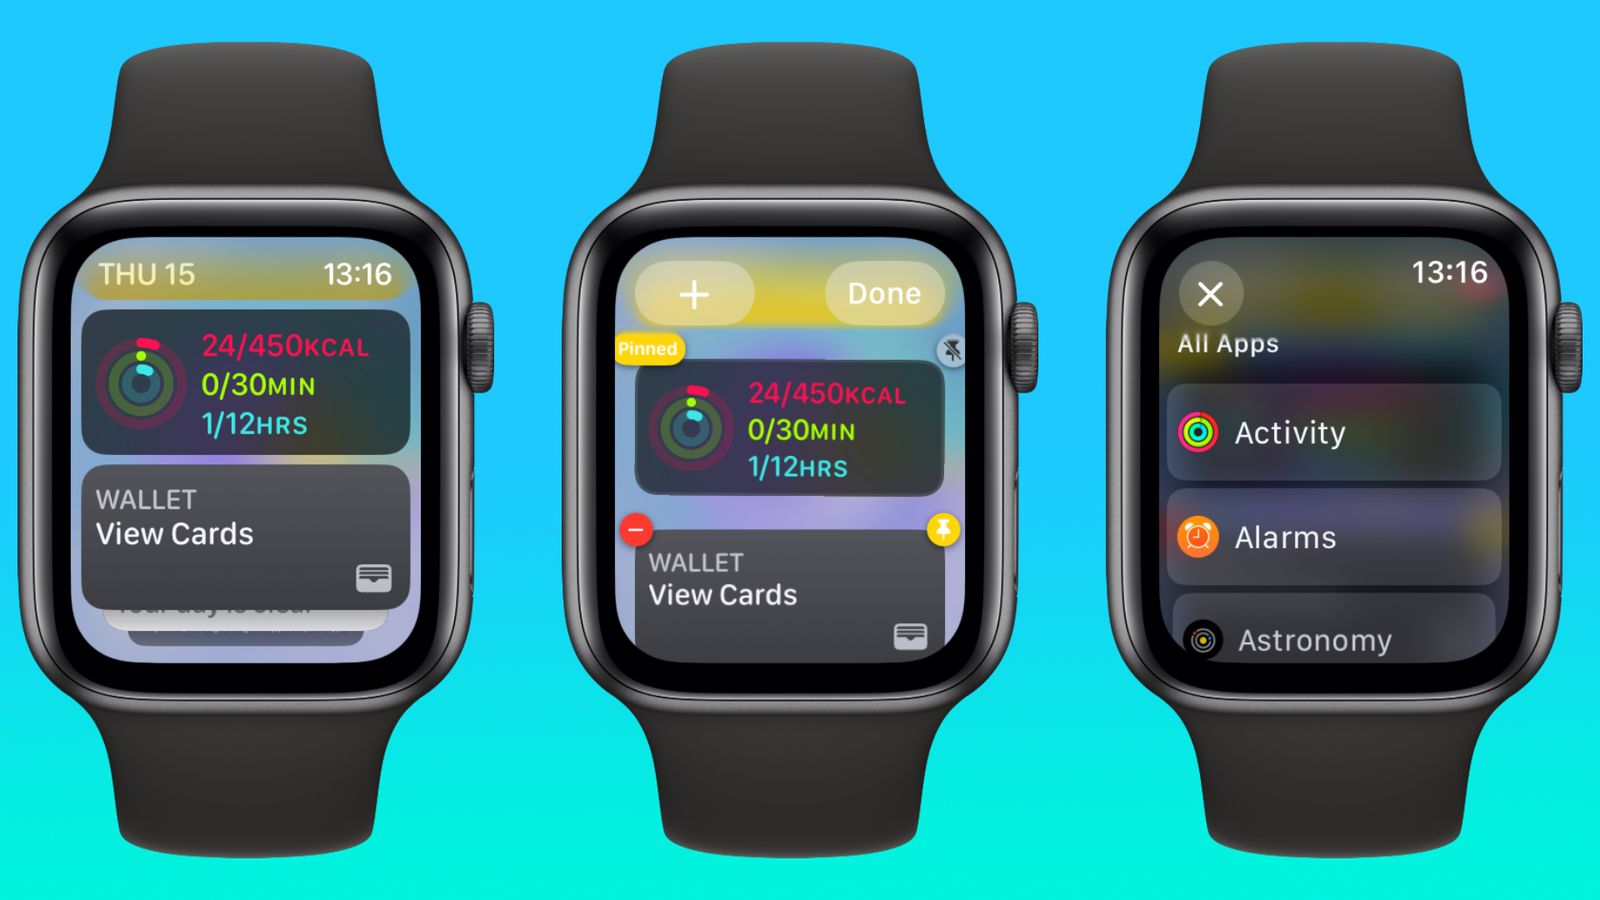 Jak działają widżety na Apple Watch z systemem watchOS 10 ciekawostki widżety komplikacji, widzety, watchOS 10, uczenie maszynowe, tarcza zegarka, przeglądanie informacji, menu aplikacji, komplikacje, kolejność widżetów, edytowanie widżetów, dynamiczny stos, Digital Crown, dedykowane widżety aplikacji, Centrum Sterowania, Apple Watch, Aplikacja  Wśród licznych nowości w systemie watchOS 10, jedną z najważniejszych innowacji jest wprowadzenie widżetów. Jak działają i jak z nich korzystać? editing widgets watch